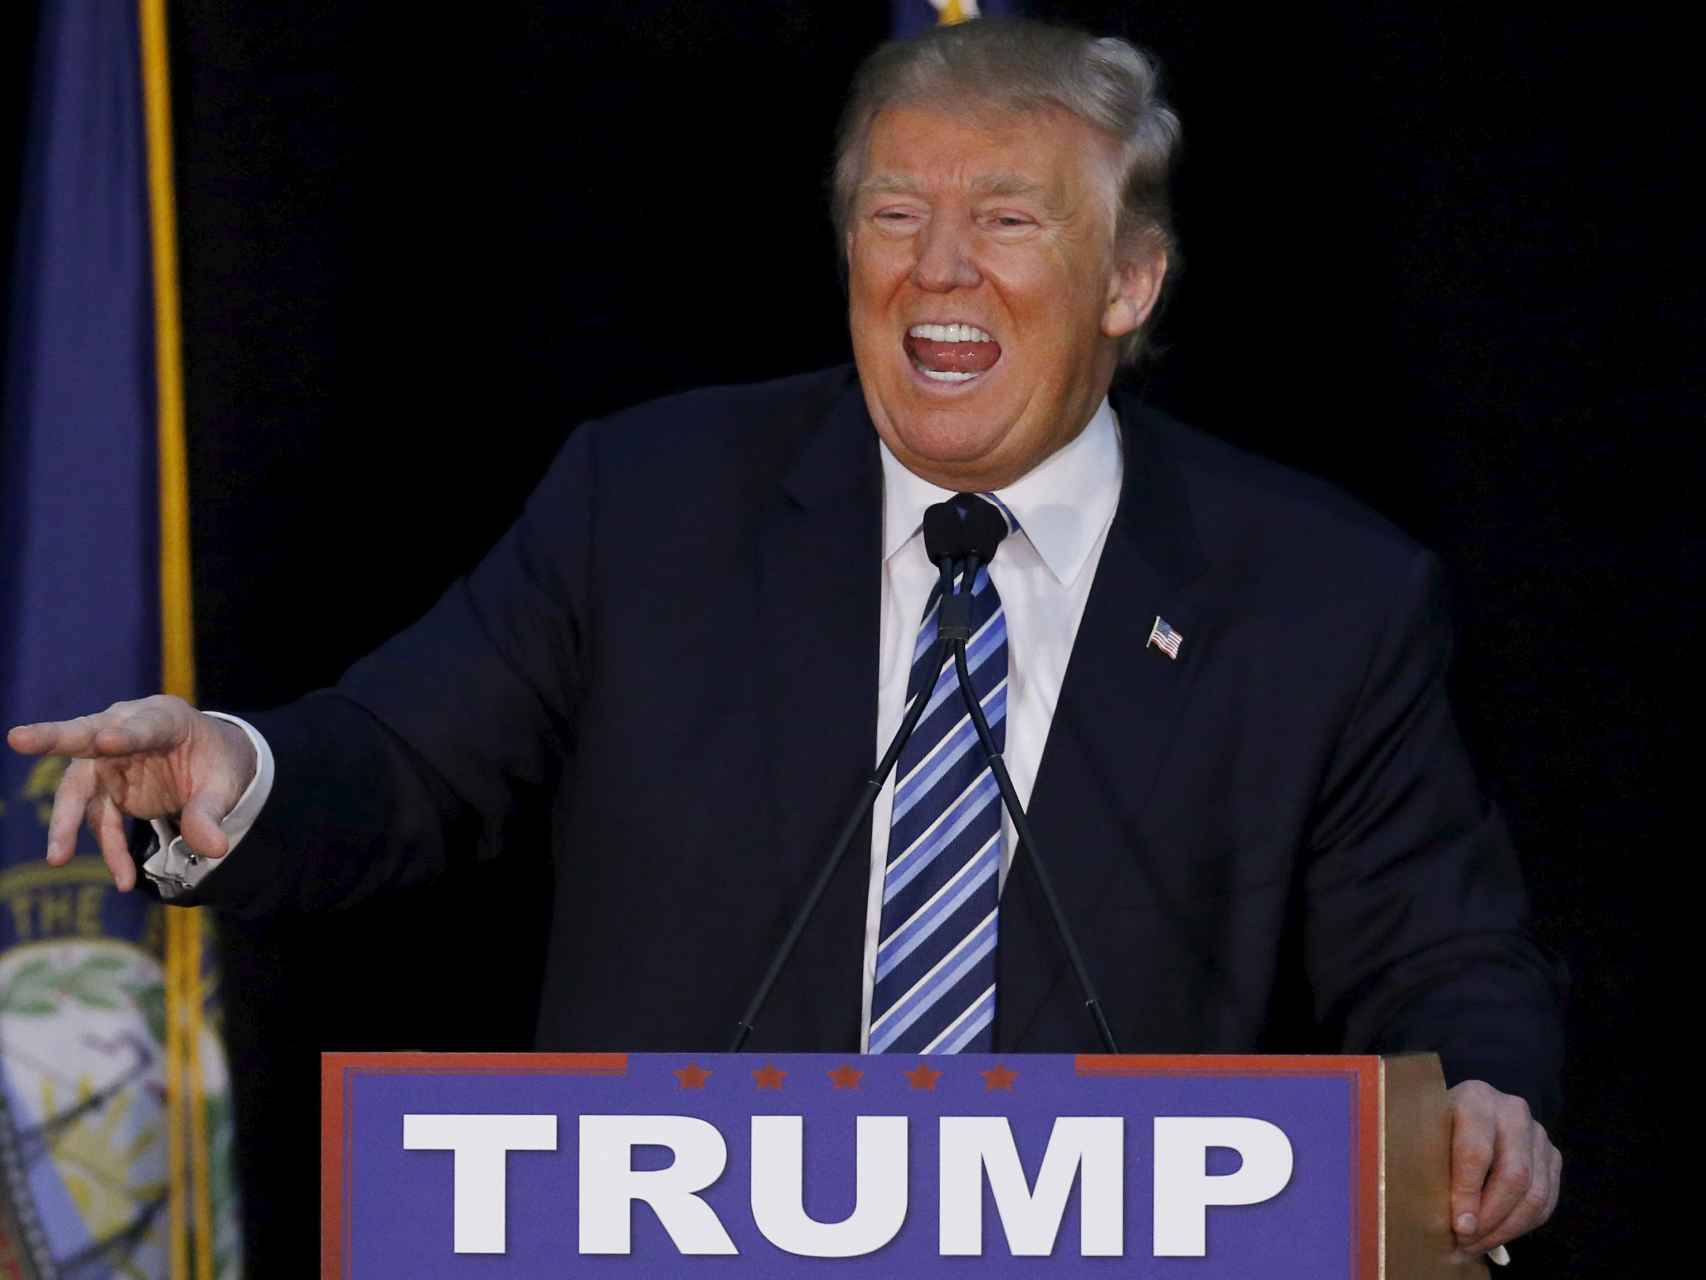 El candidato republicano Donald Trump/Jim Bourg/Reuters